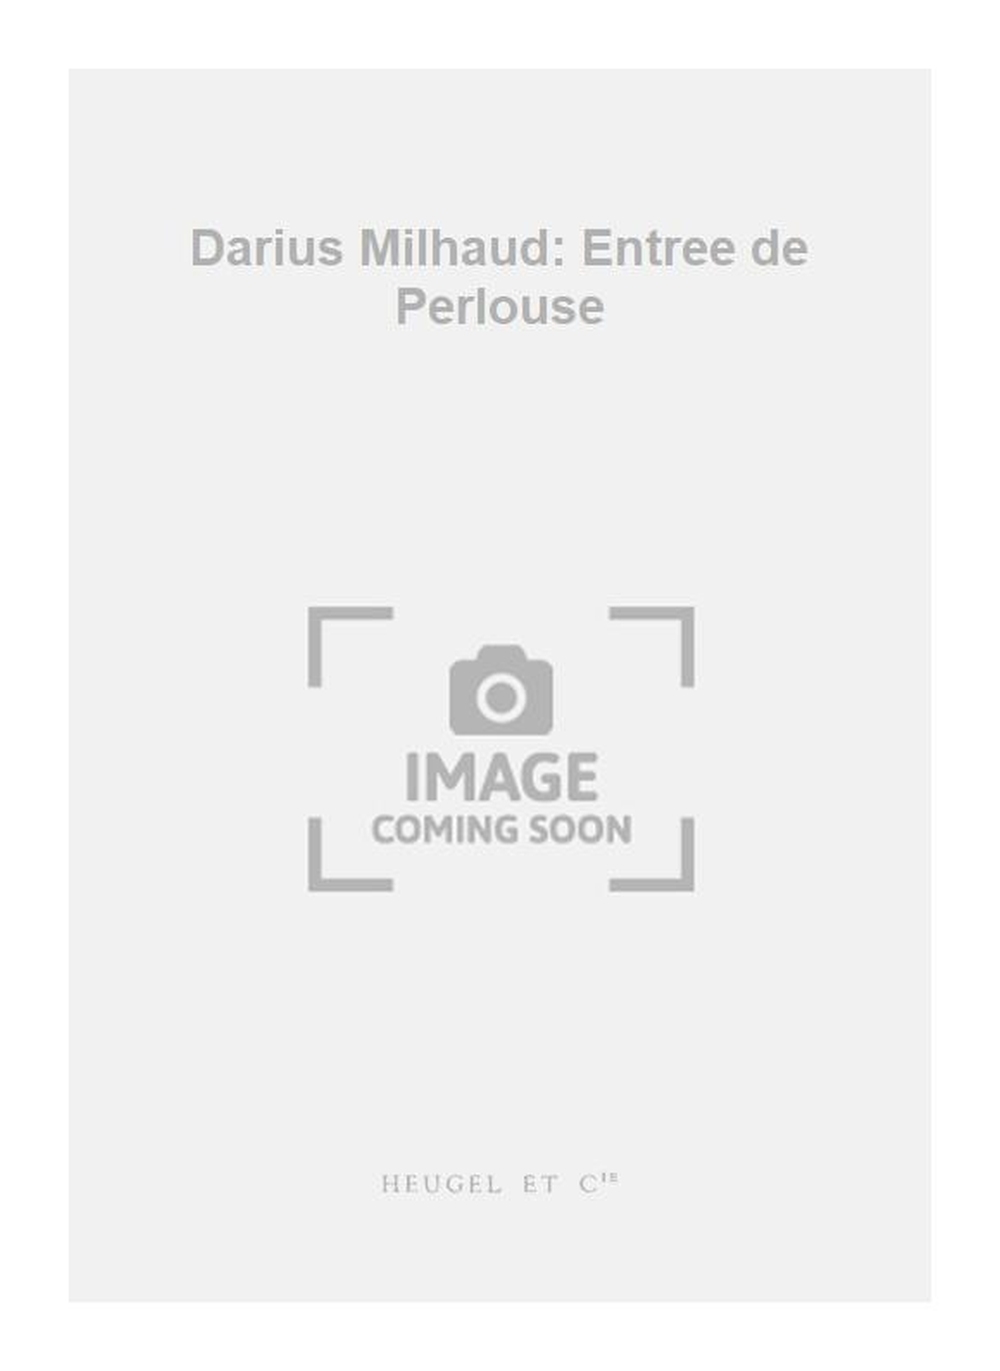 Darius Milhaud: Darius Milhaud: Entree de Perlouse